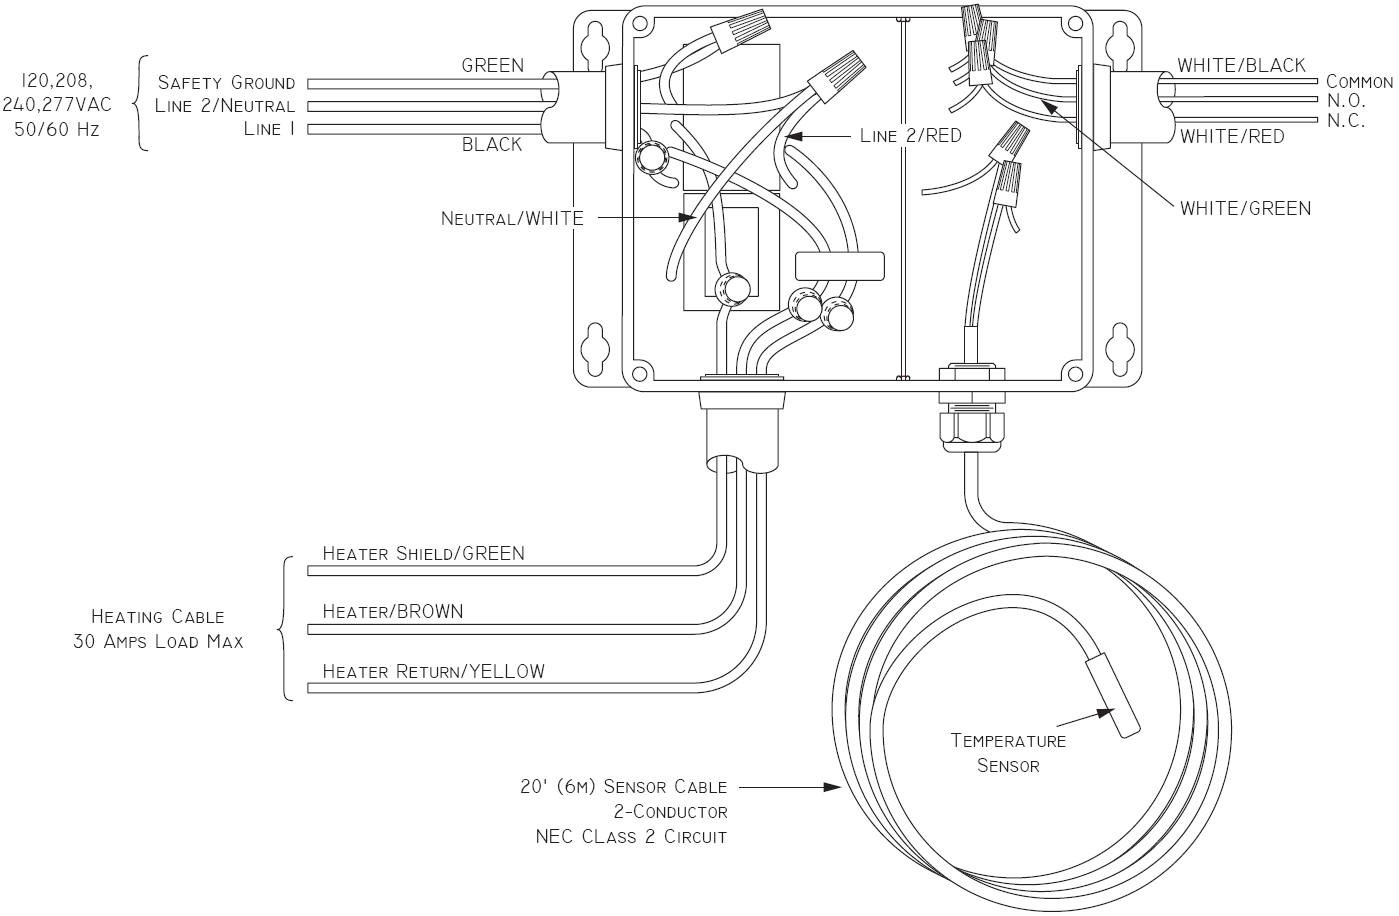 Nuheat Wiring Diagram And Sst 2 7 Jpg